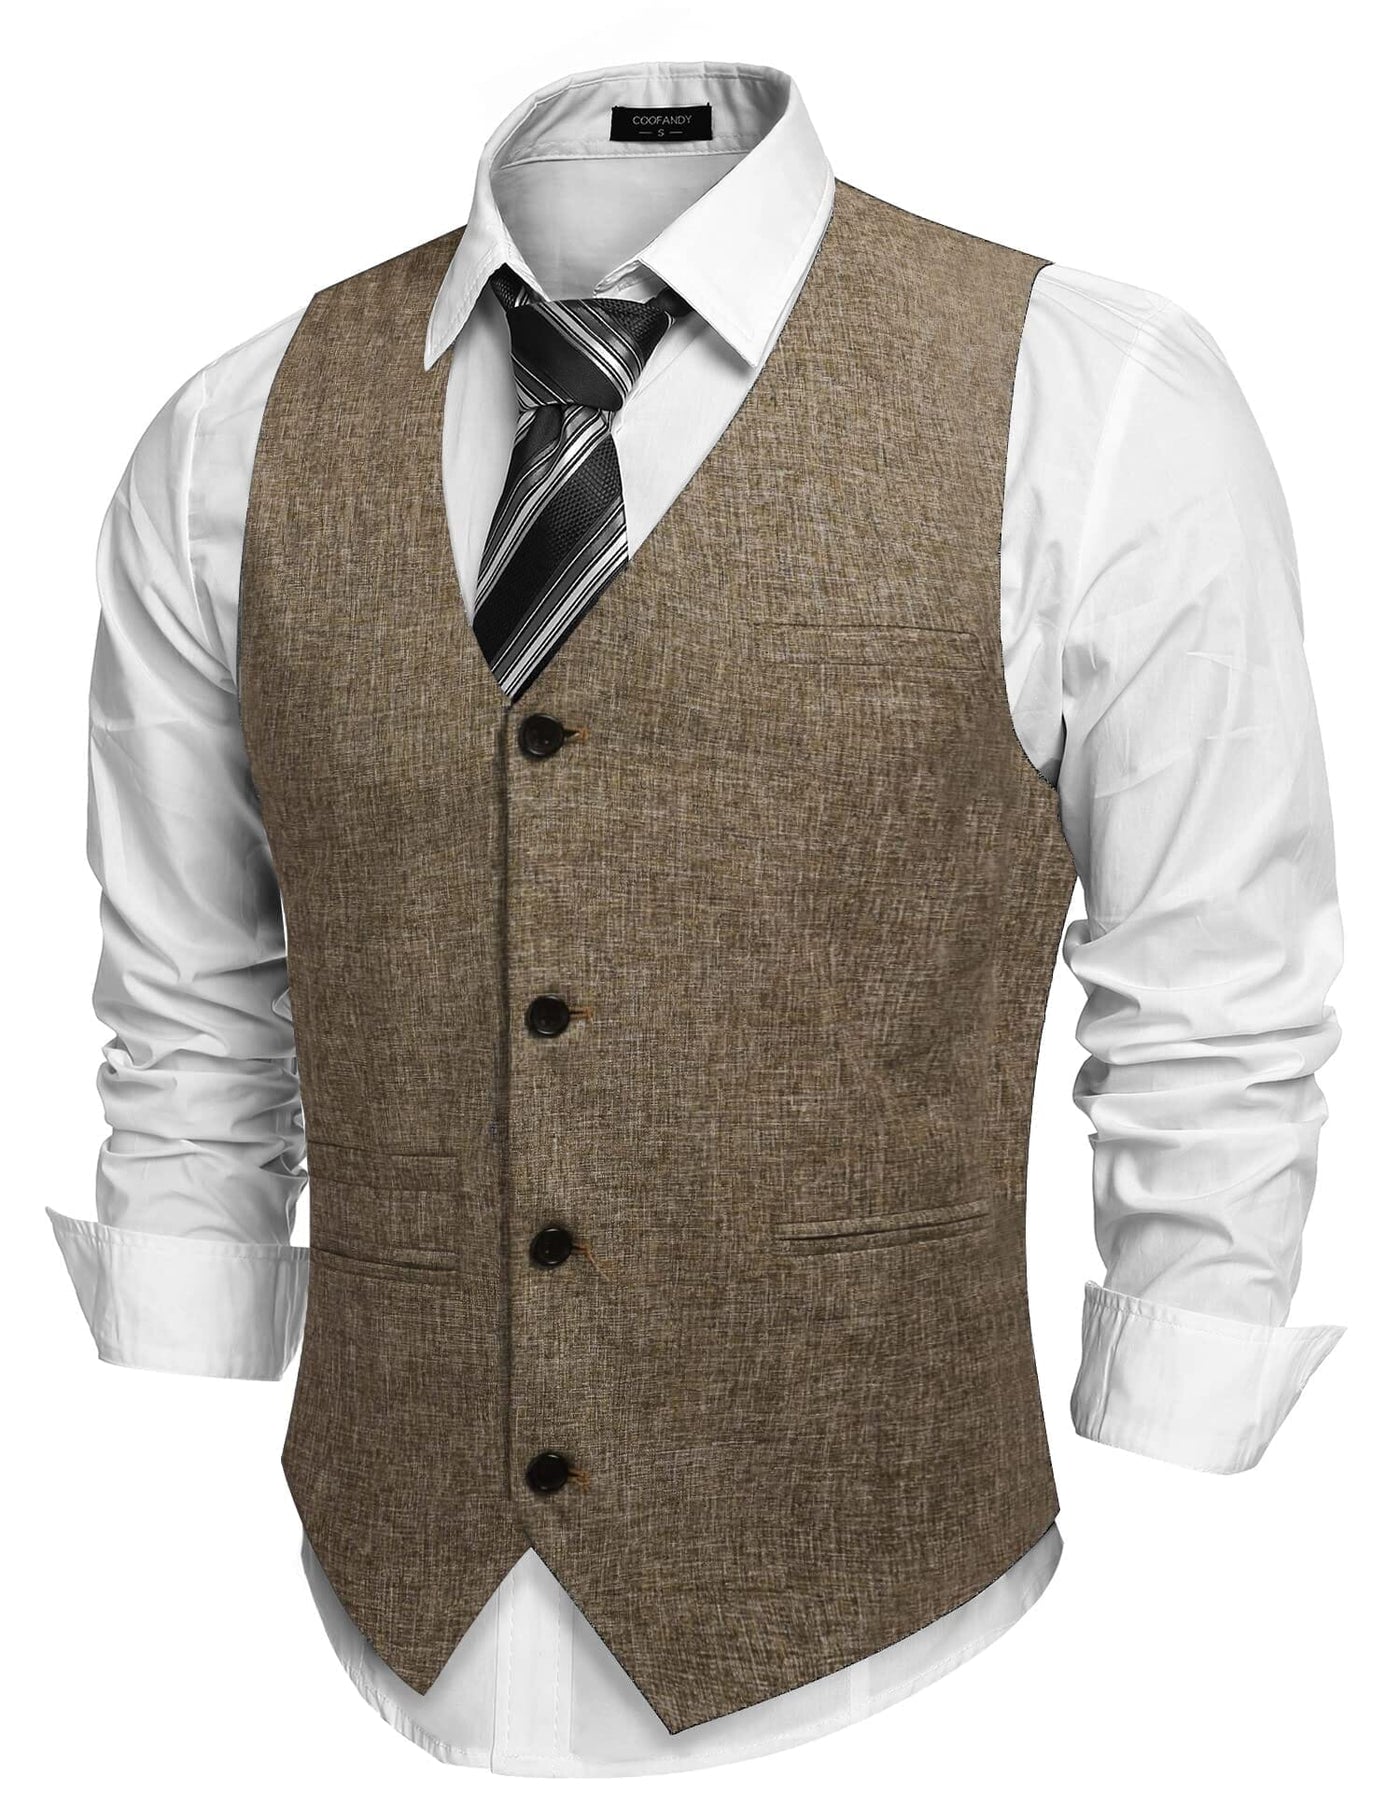 Coofandy Waistcoat Business Vests (US Only) Vest coofandy Brown S 